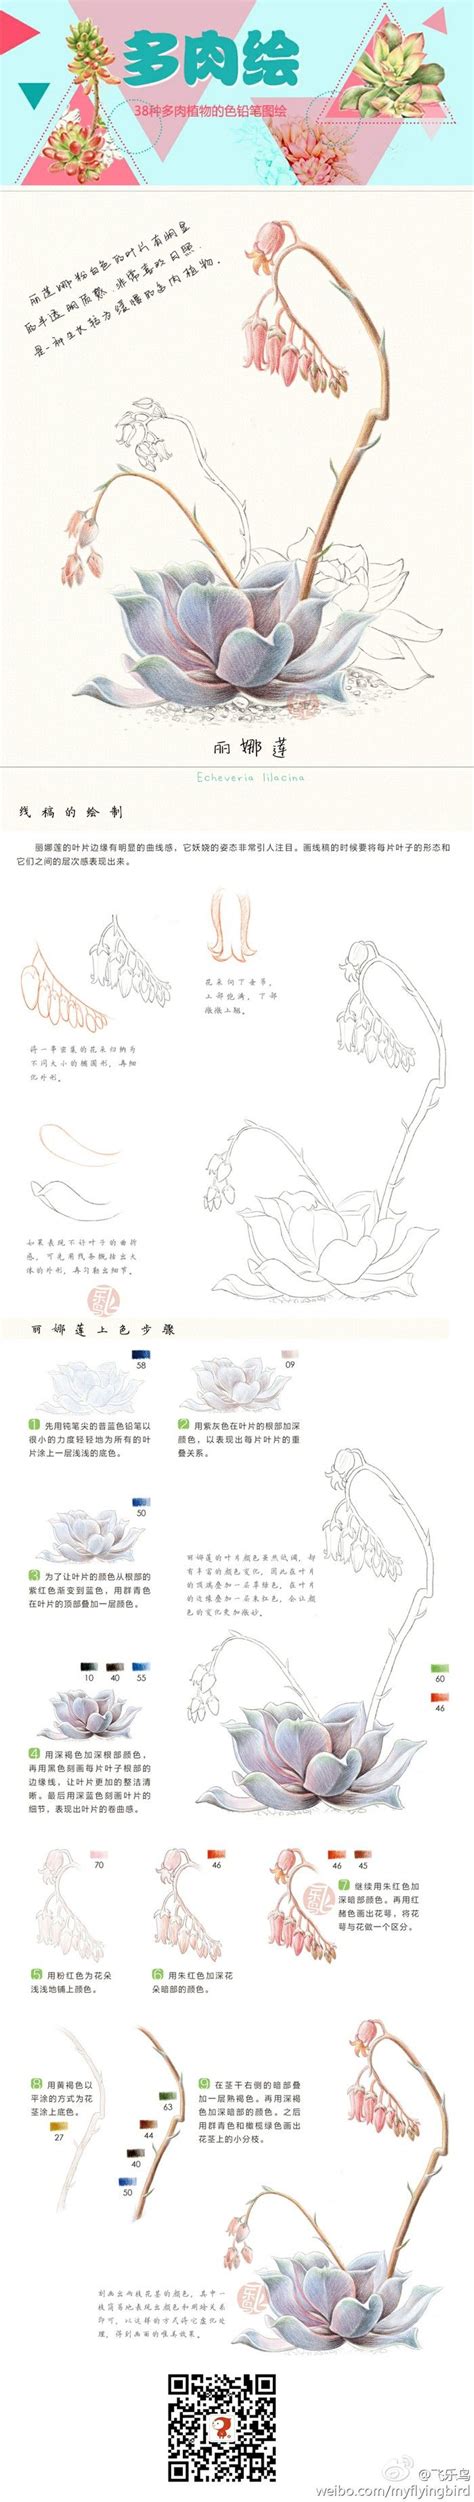 180 ý tưởng hay nhất về flower step by step | hoa, nghệ thuật, hình vẽ hoa